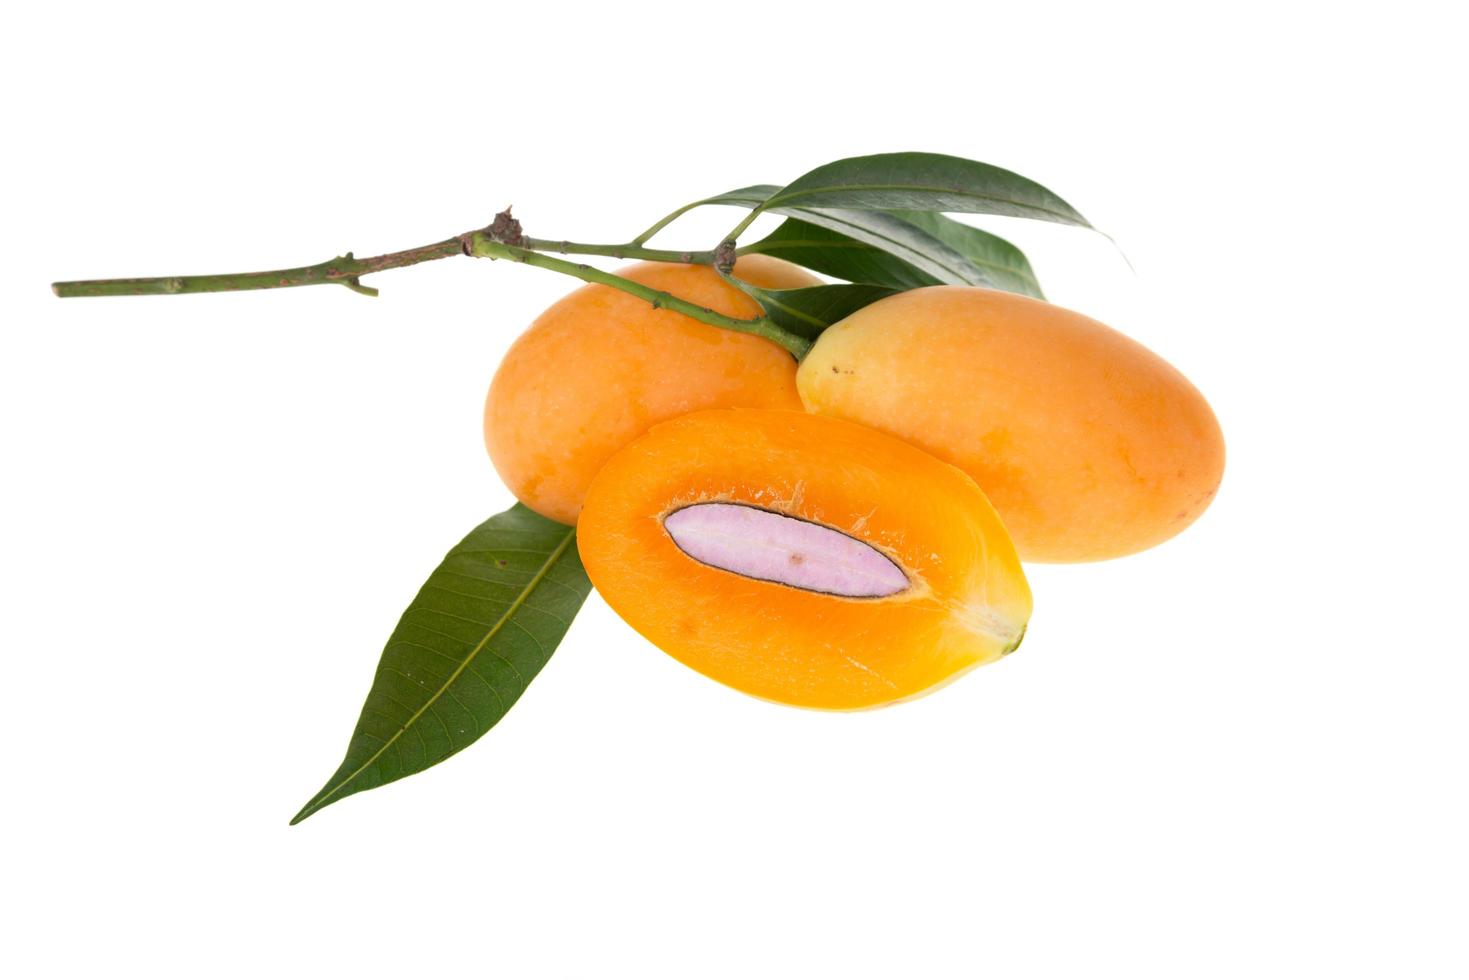 Sweet Marian plum thai fruit isolated on white background photo